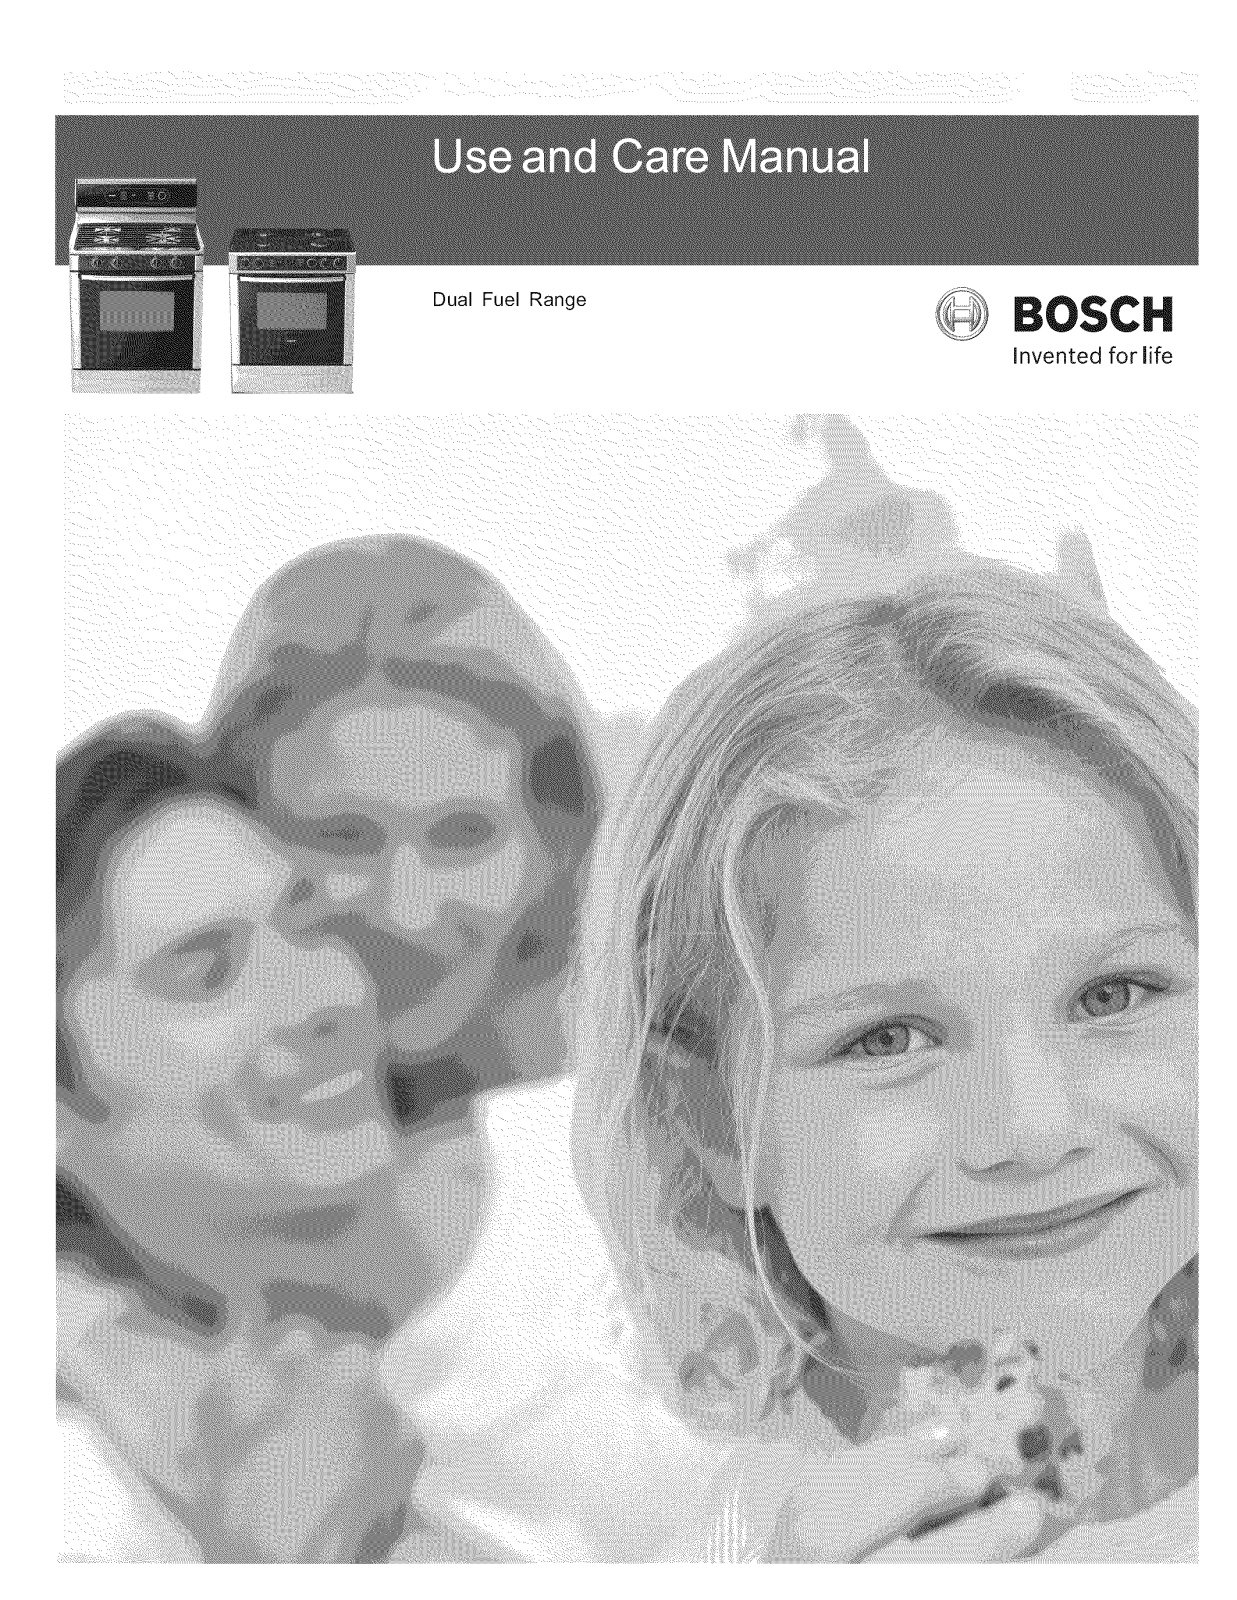 Bosch HDI7032U/03, HDI7032U/01, HDI7132U/02, HDI7132U/03, HDI7132U/01 Owner’s Manual